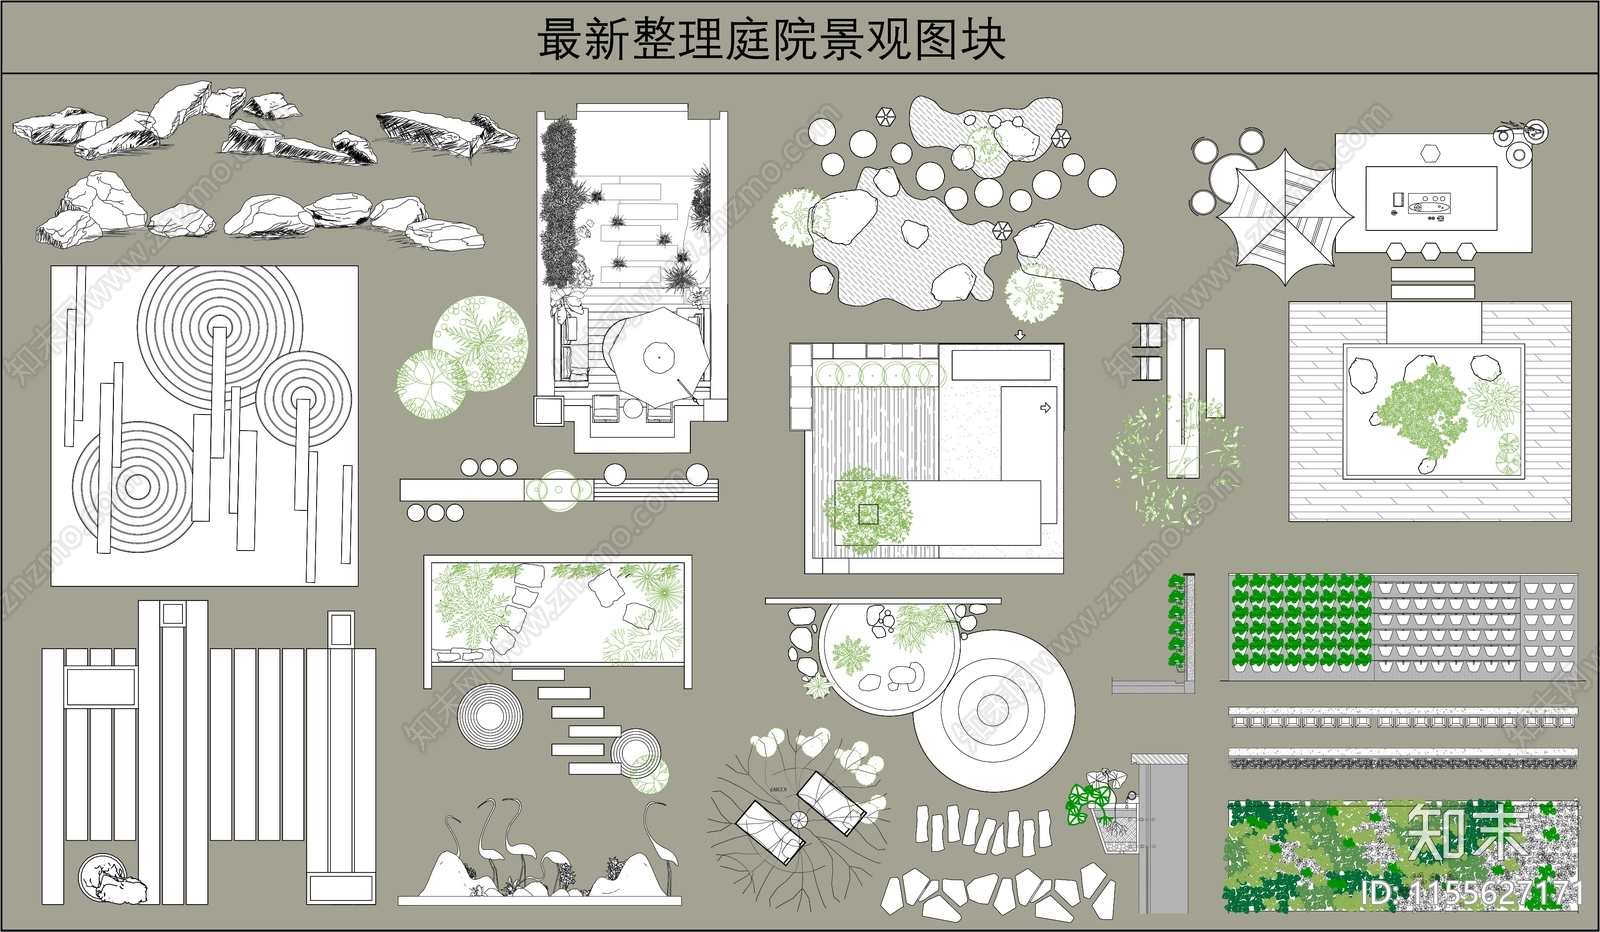 最新整理庭院景观图块合集施工图下载【ID:1155627171】